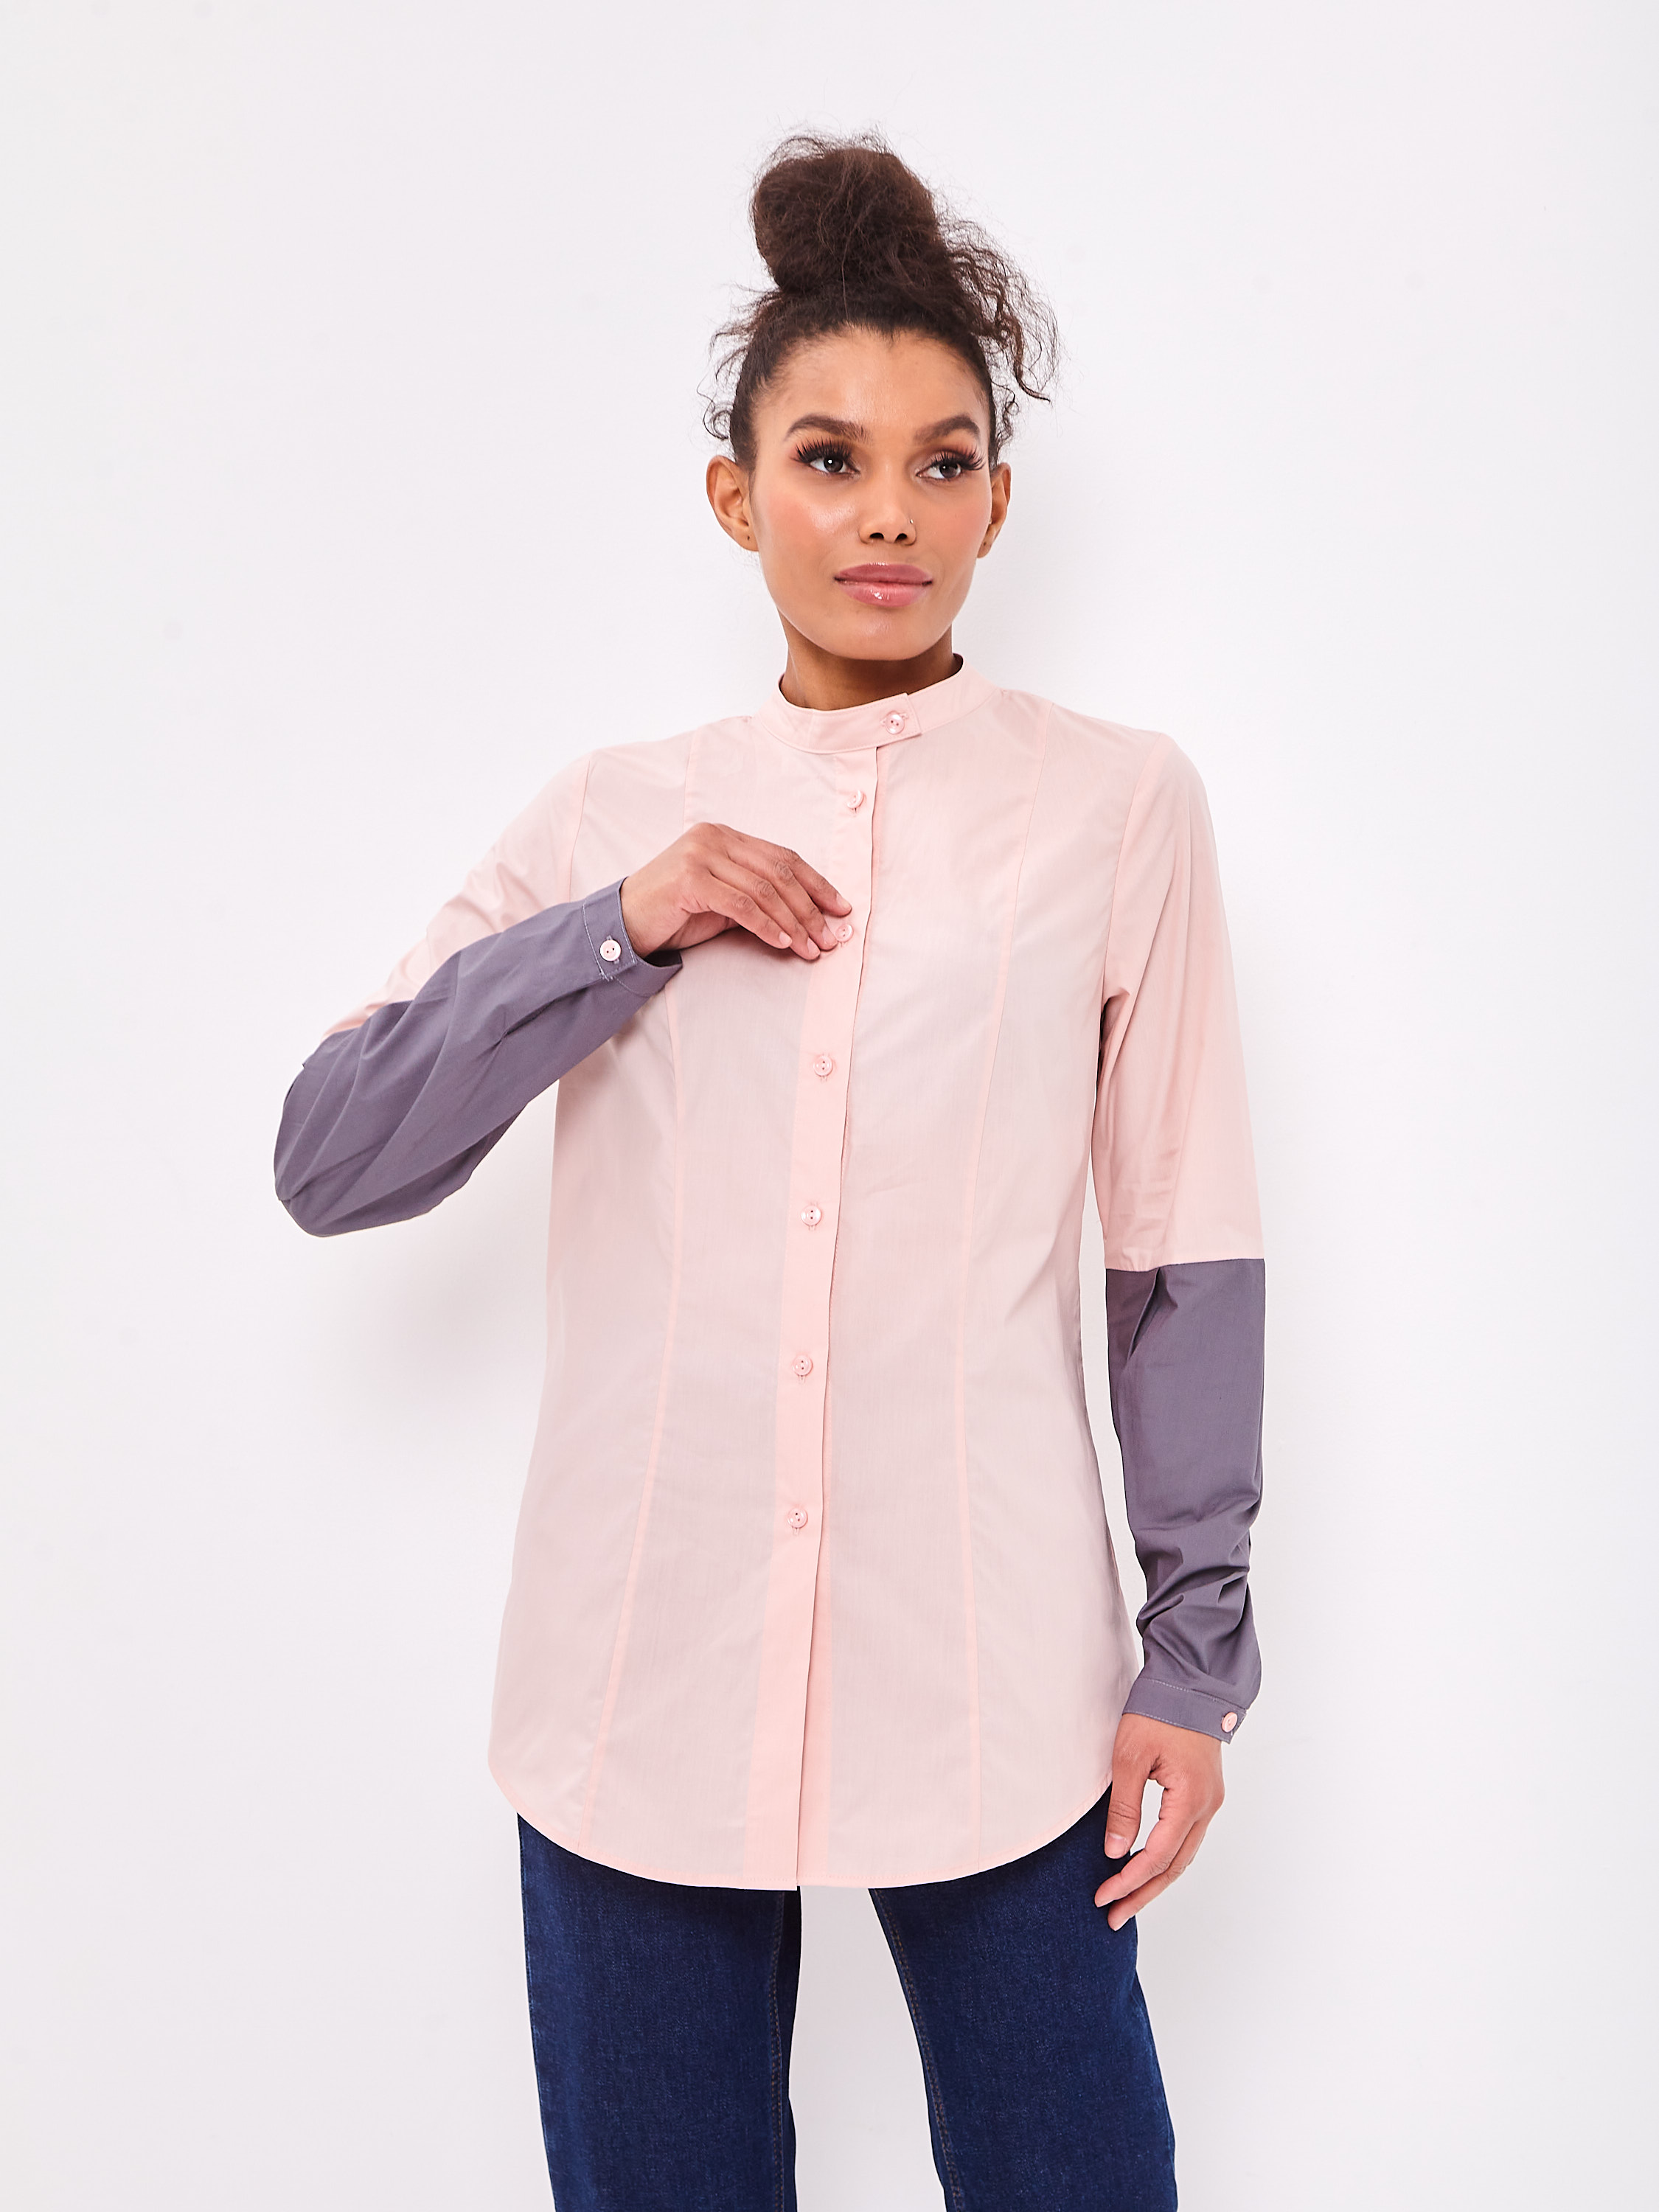 Рубашка женская Klim KL025 розовая 48 RU